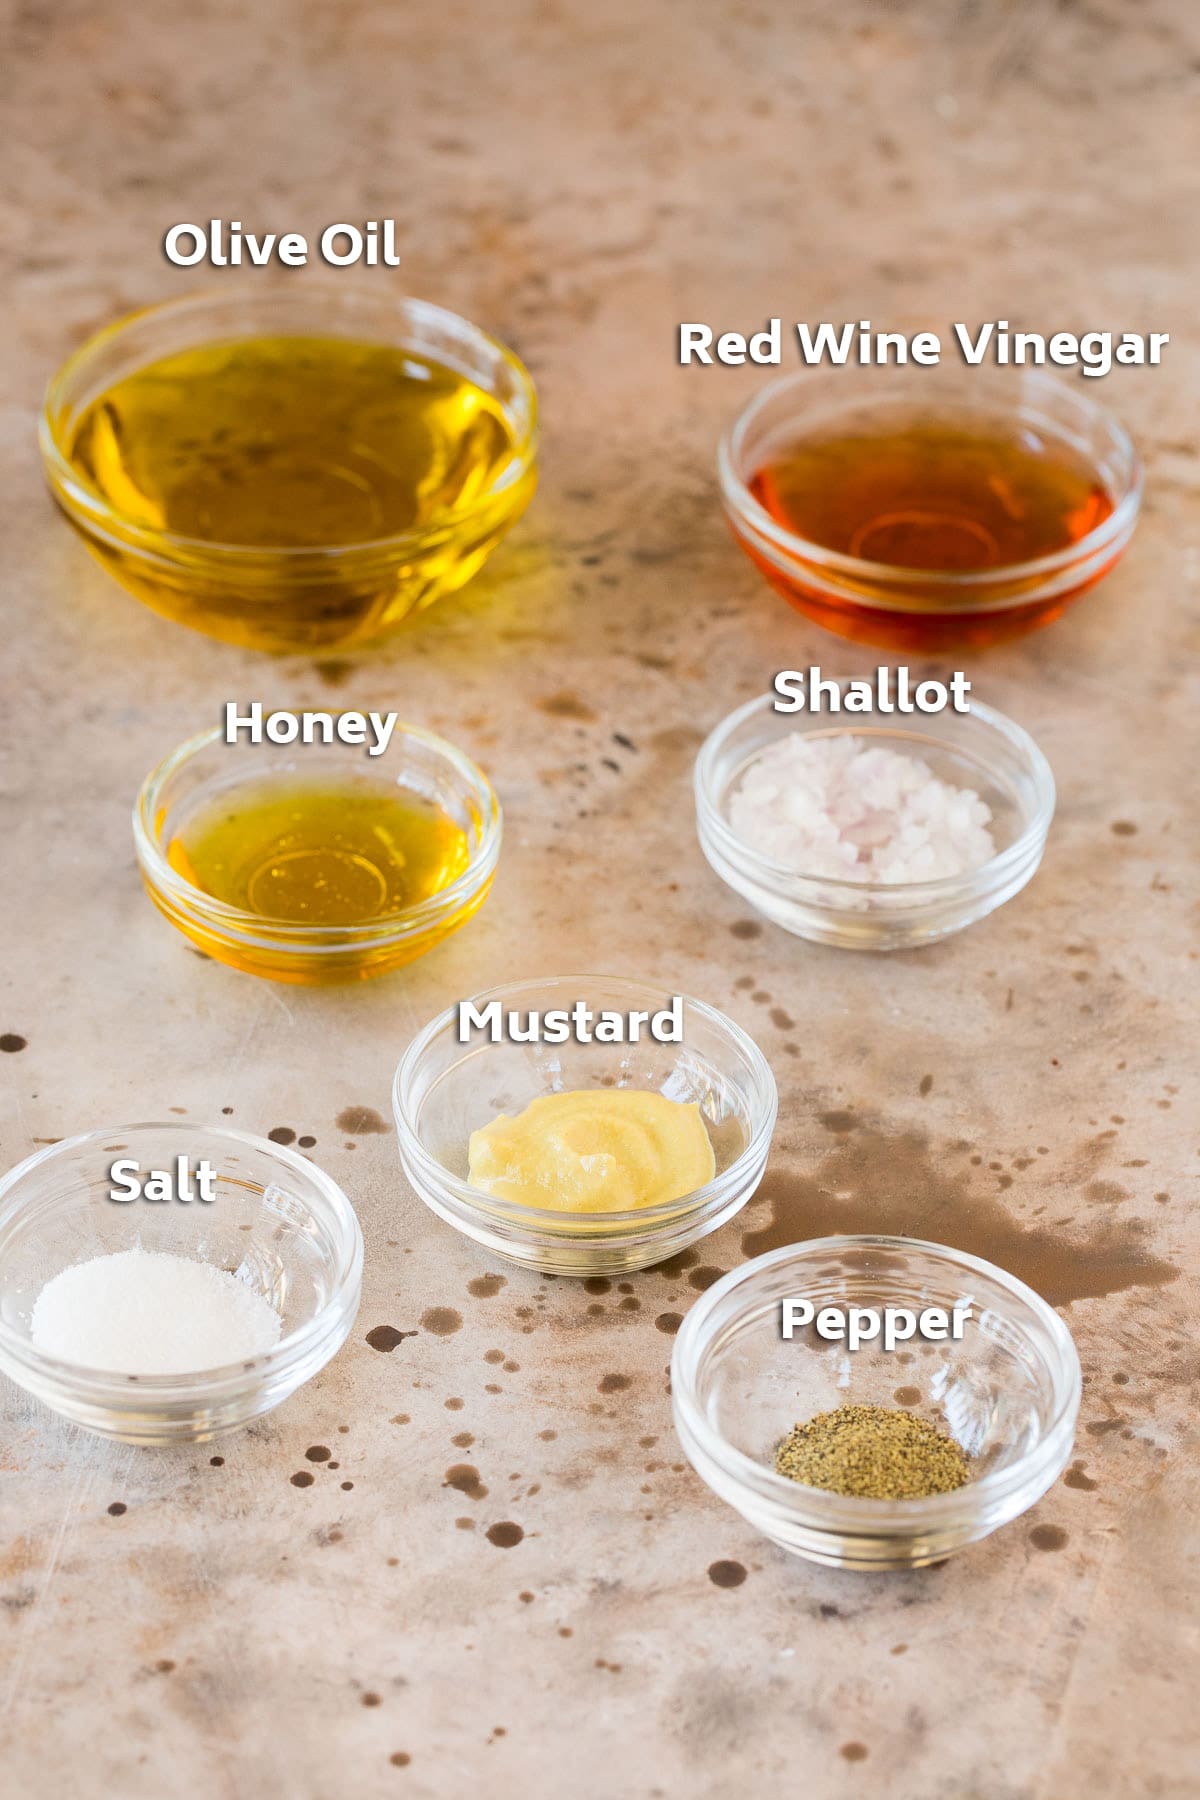 Bowls of salad dressing ingredients such as olive oil, vinegar and seasonings.